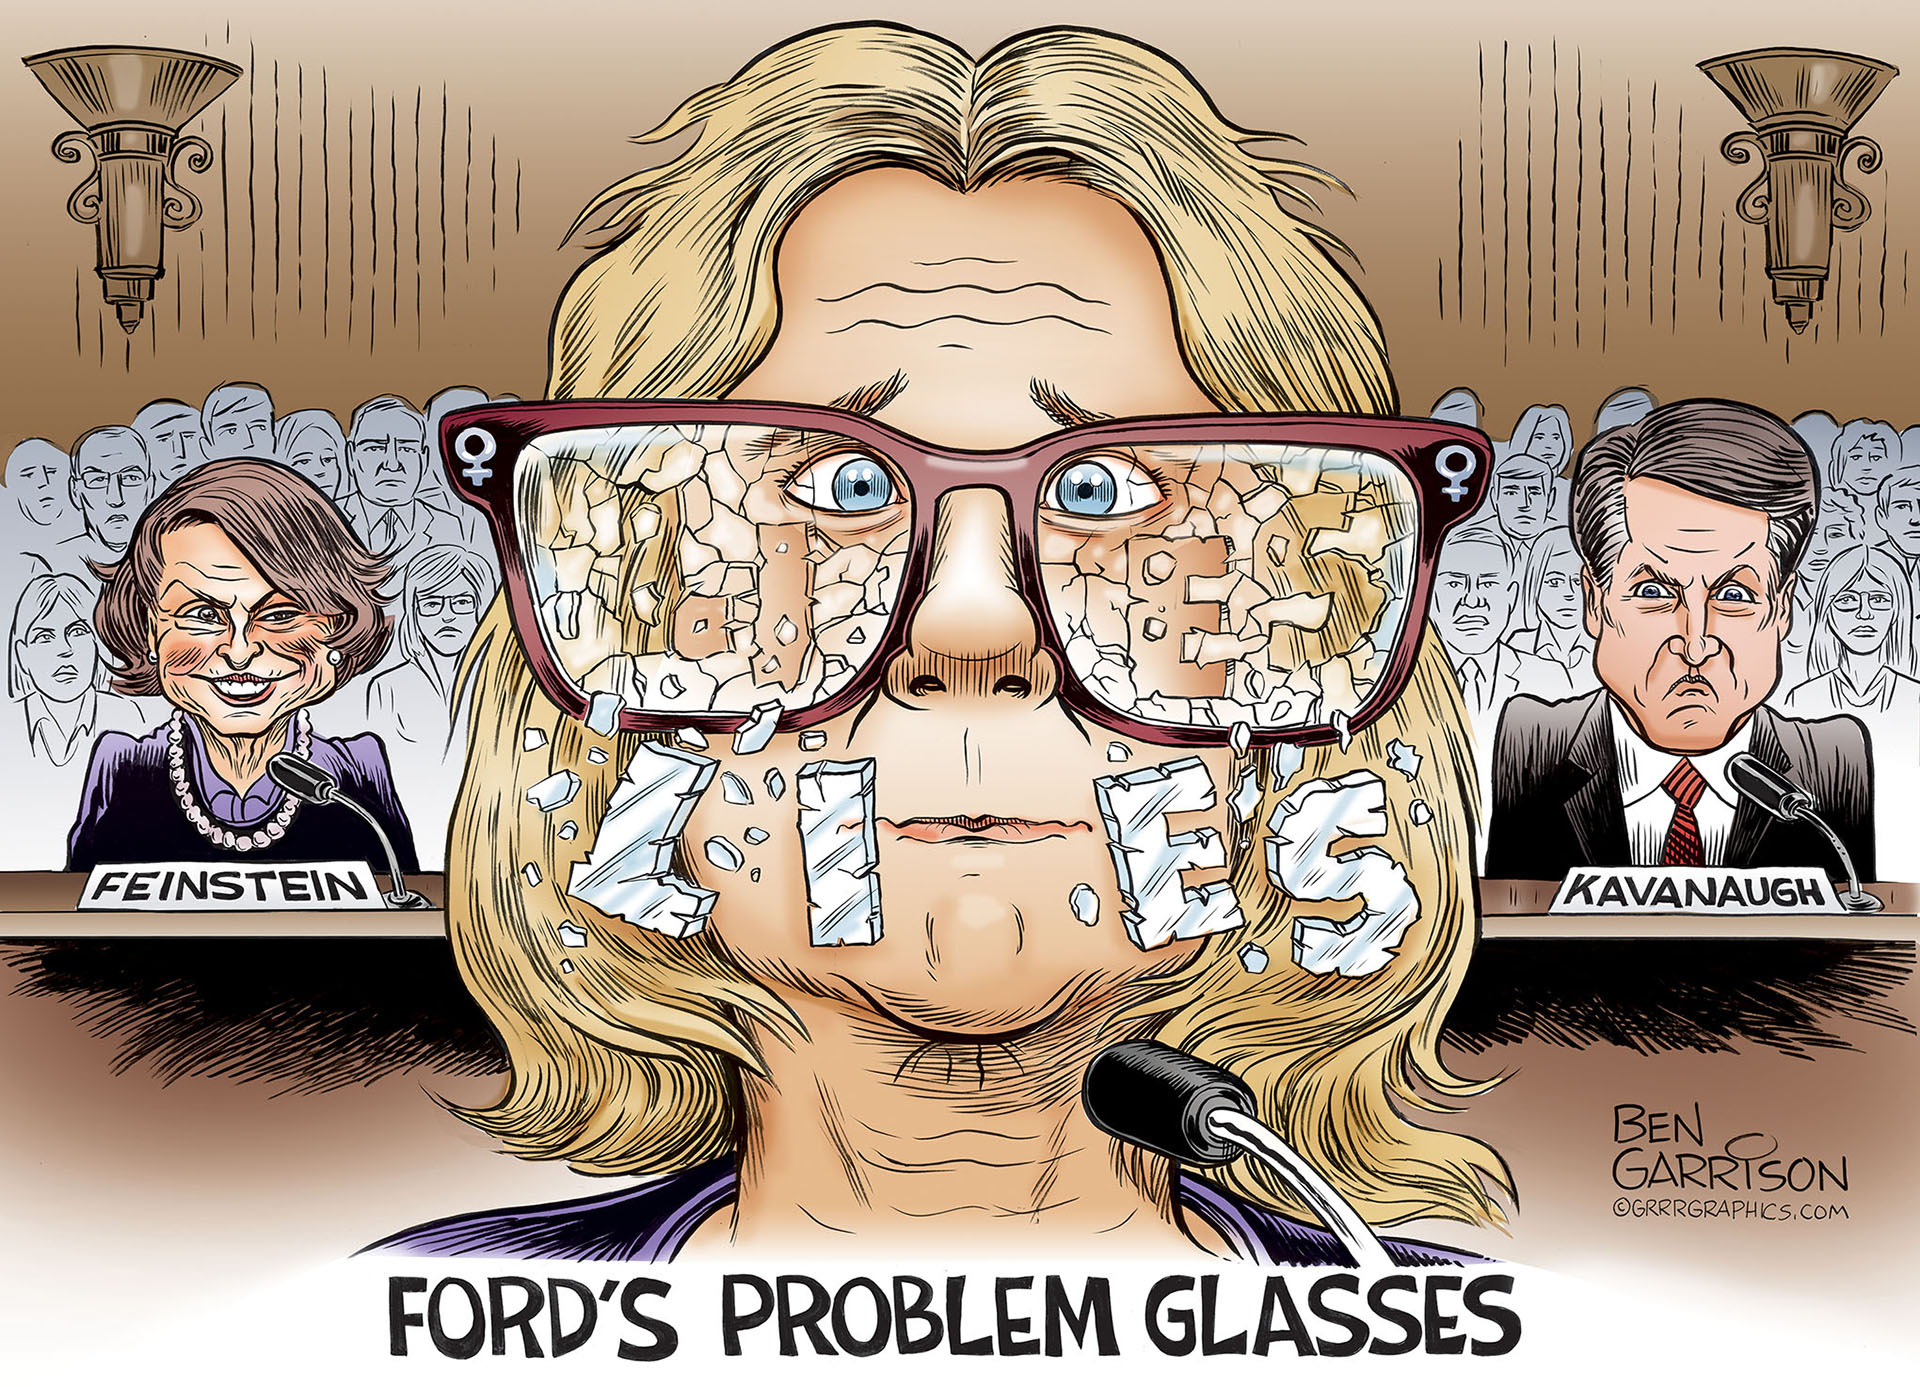 ben garrison ford - Tra ske Feinstein Kavanaugh Ben Garrison Grrrgraphes.Com Ford'S Problem Glasses